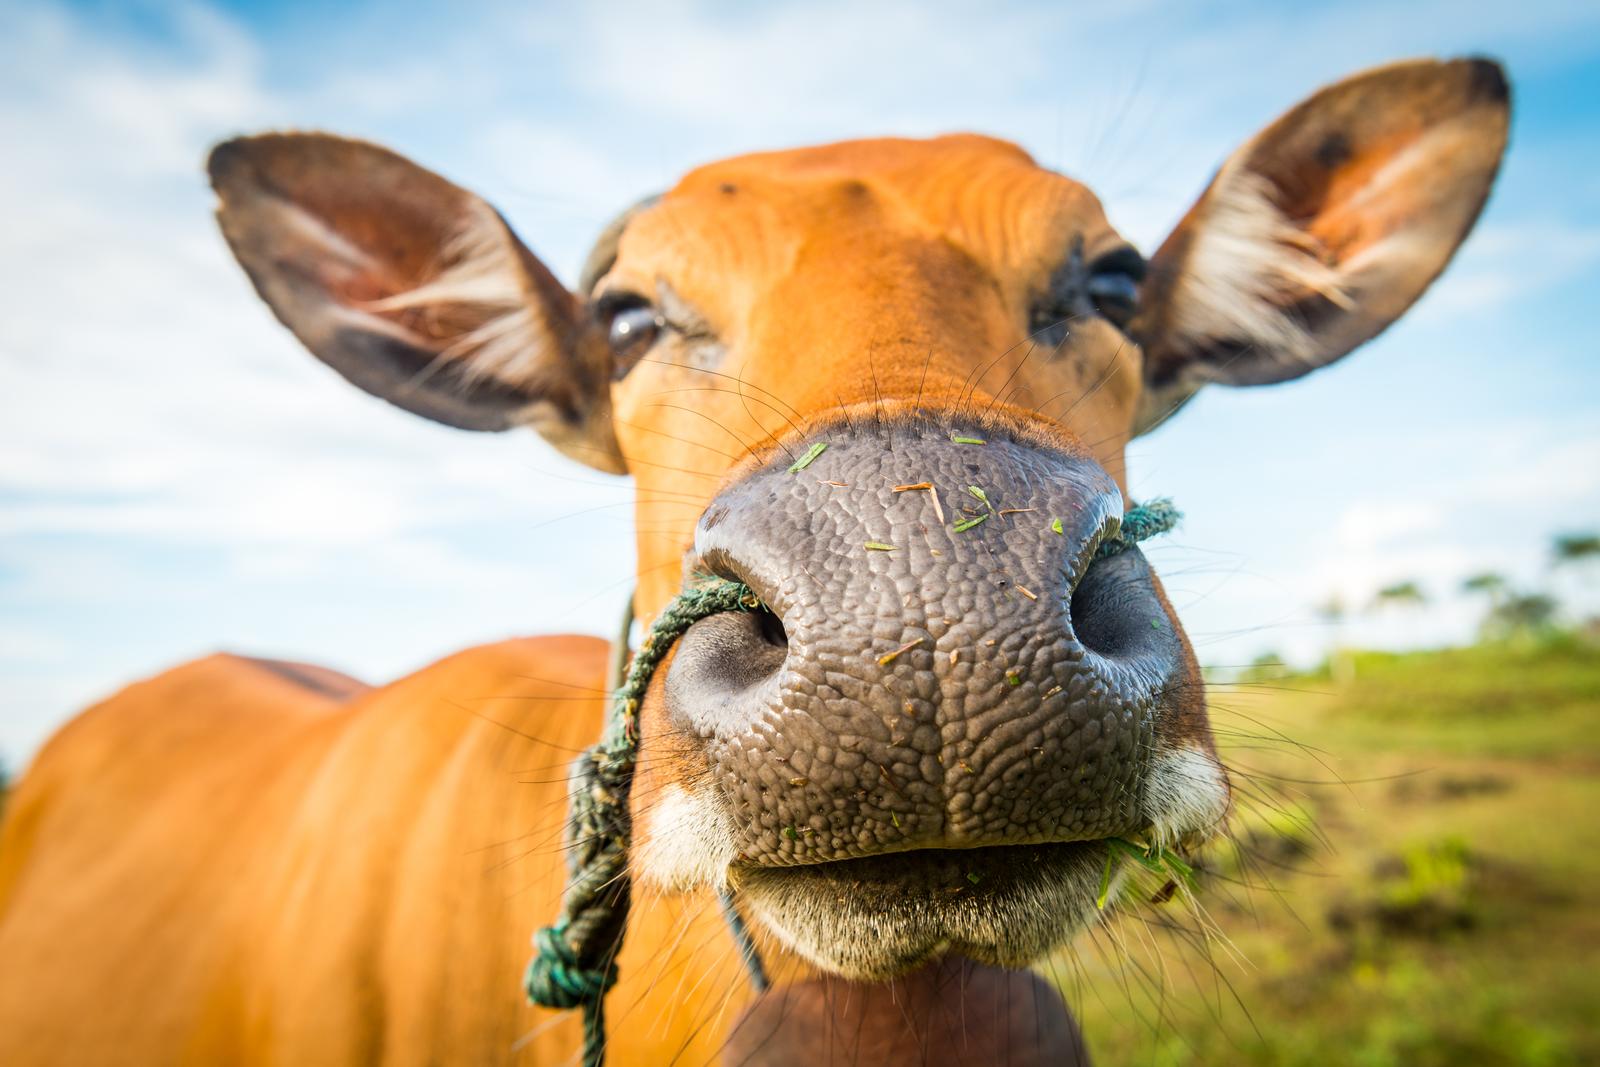 Raising of dairy cattle in Estonia